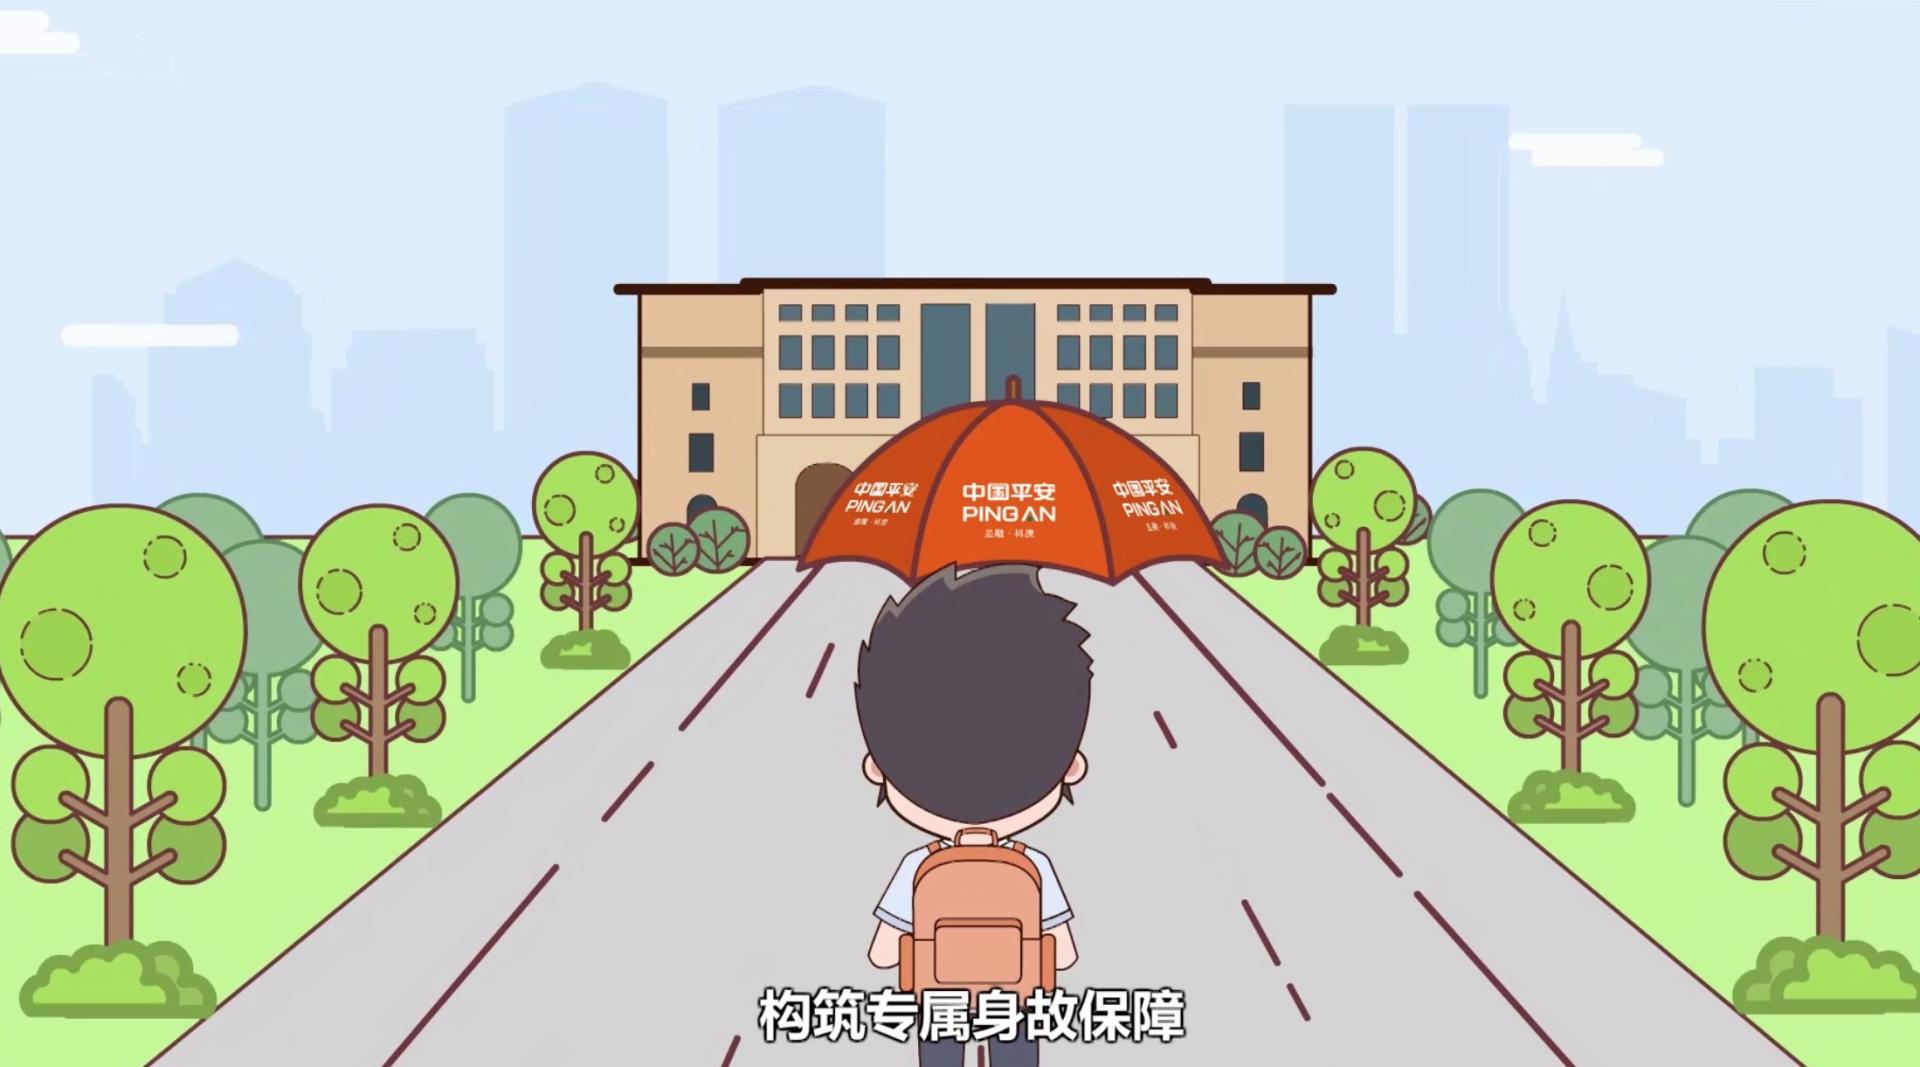 平安银保金博士MG动画宣传片